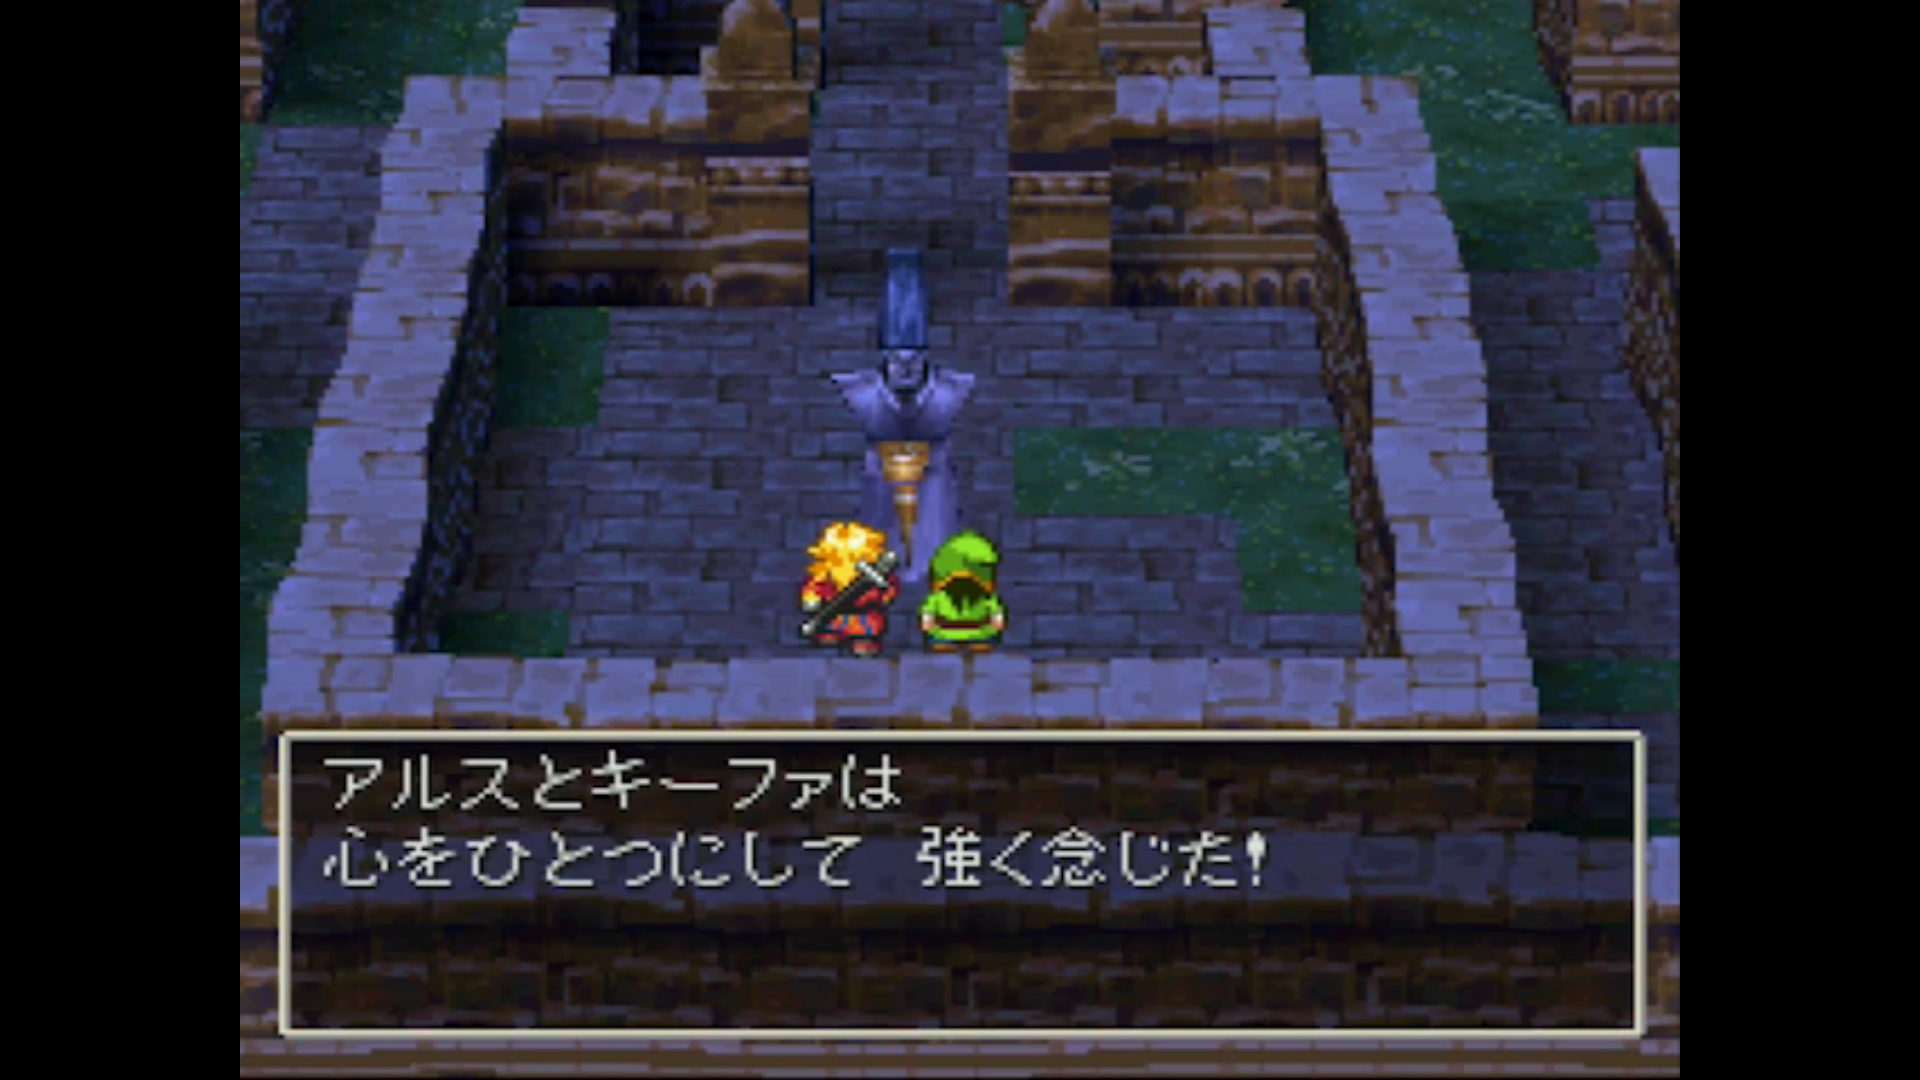 ドラゴンクエストvii エデンの戦士たち Dq7 ドラクエ7 Dragon Quest Vii のネタバレ解説まとめ Renote リノート